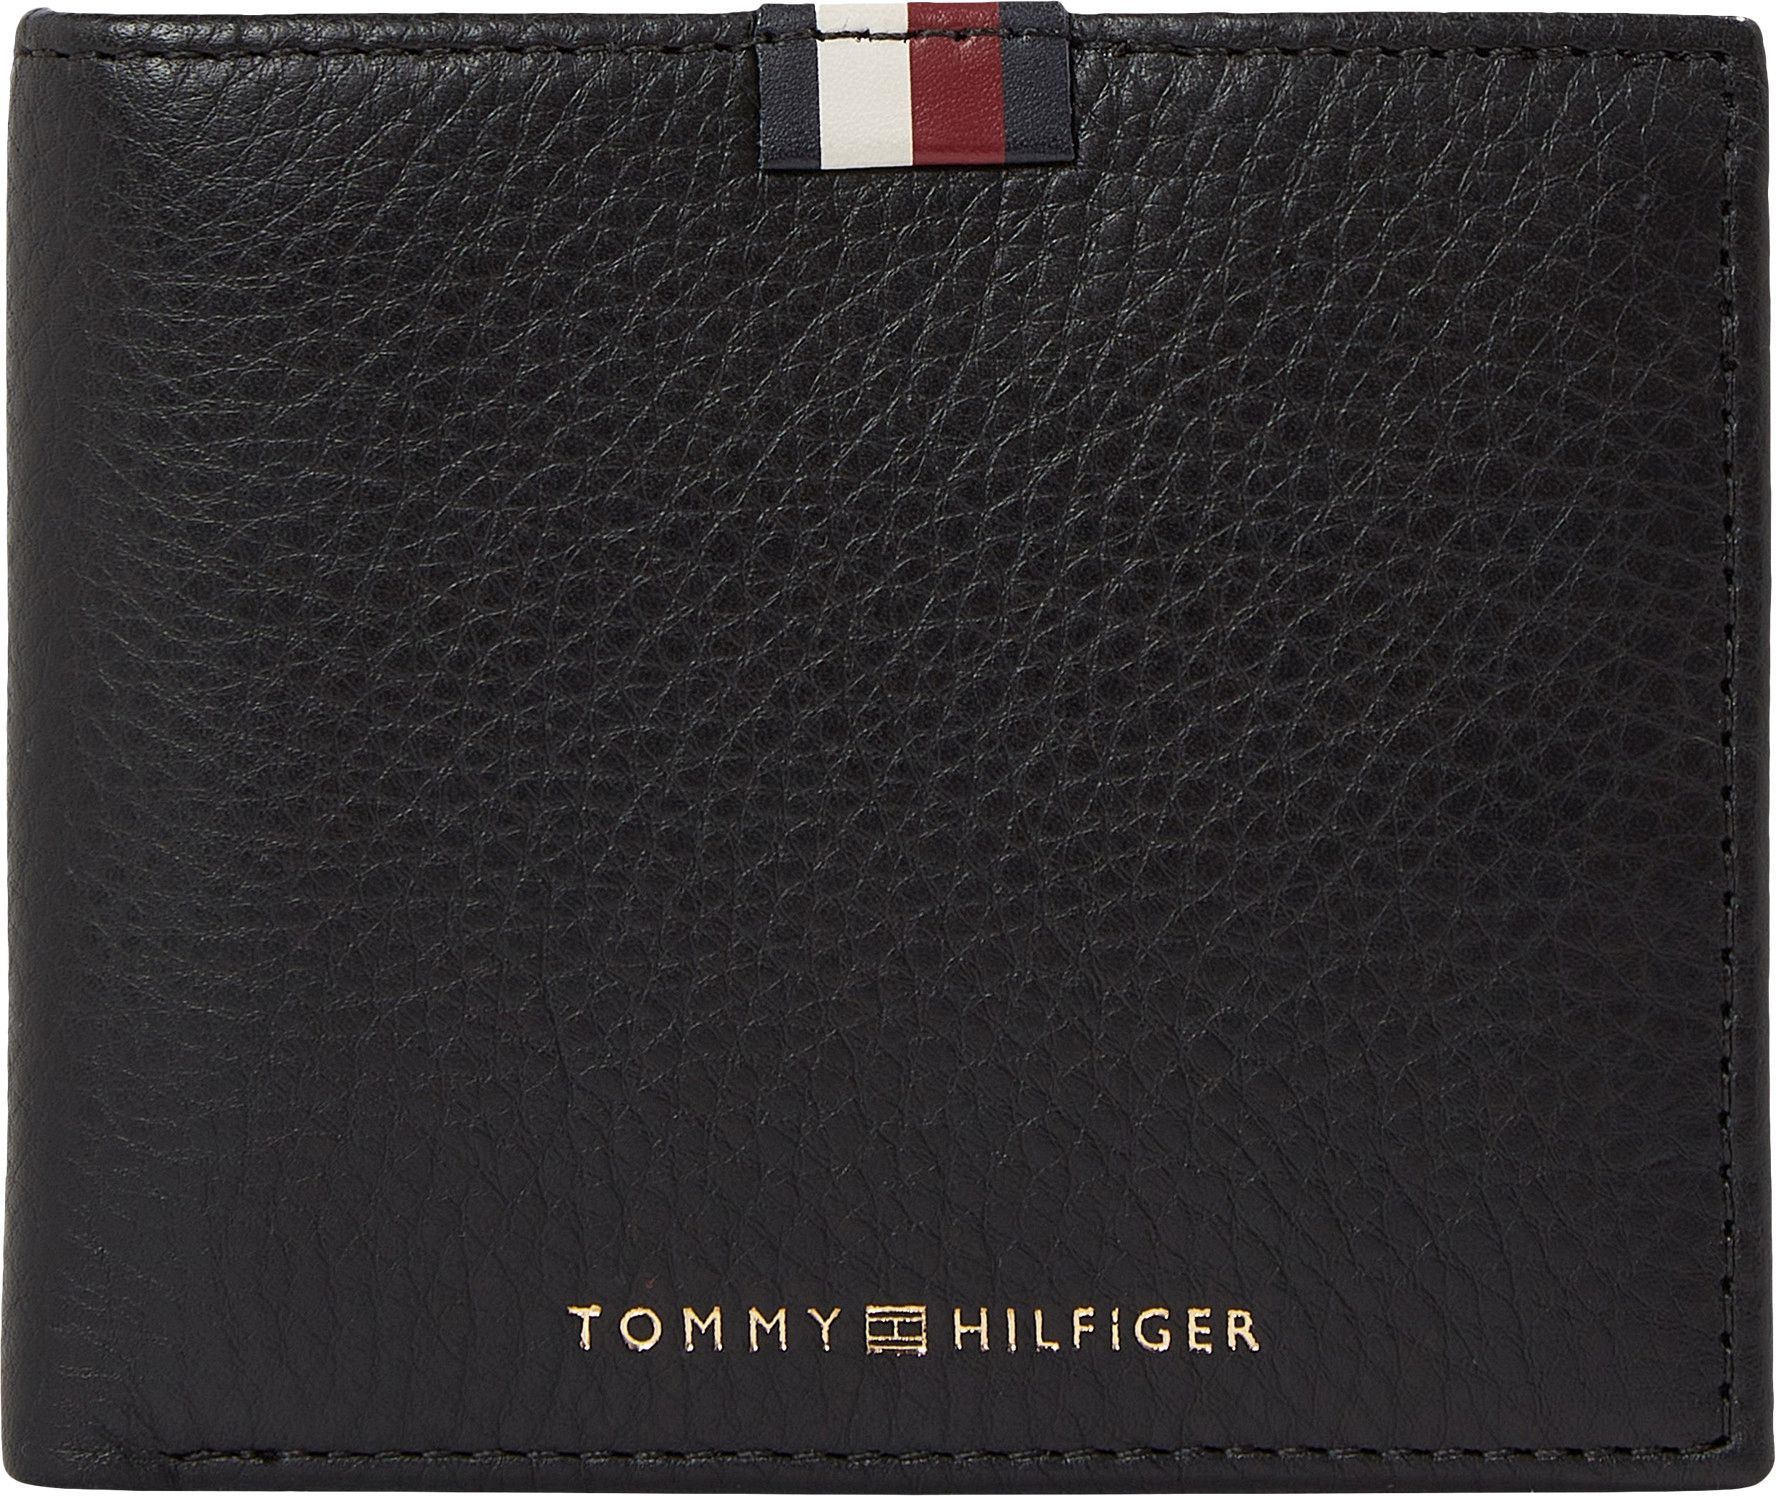 Lederbörse Tommy Hilfiger Premium Leather Black Flap and CC Coin